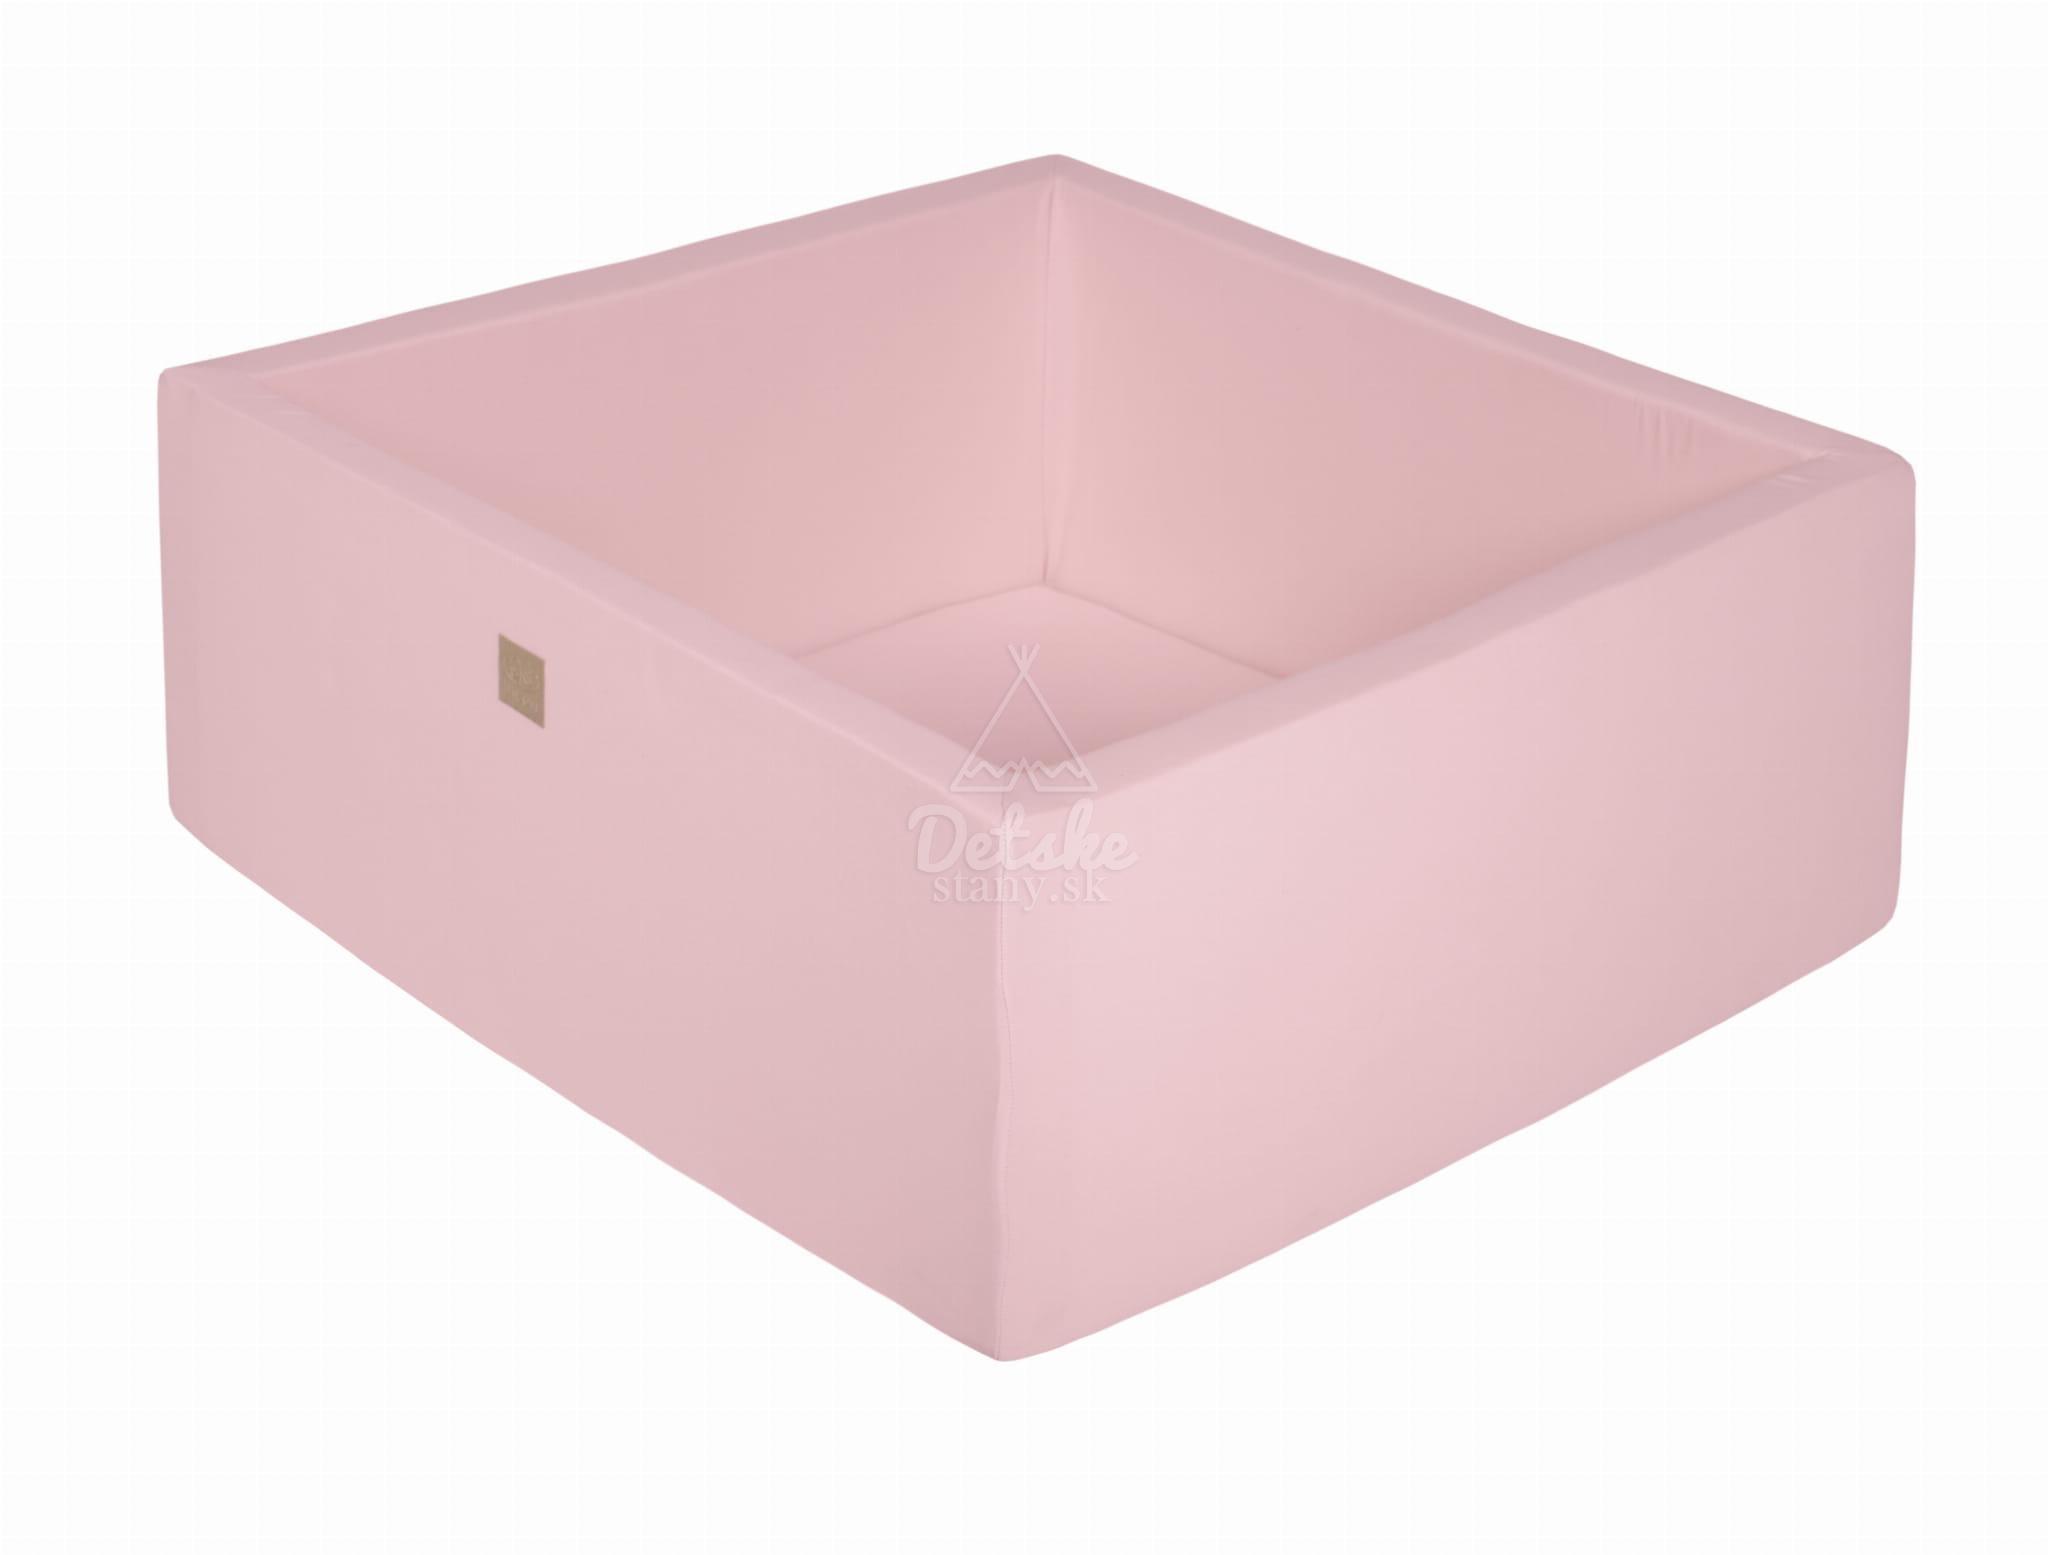 Štvorcový detský suchý bazén MeowBaby® bez guličiek (110x110x40cm) - púdrovo ružový